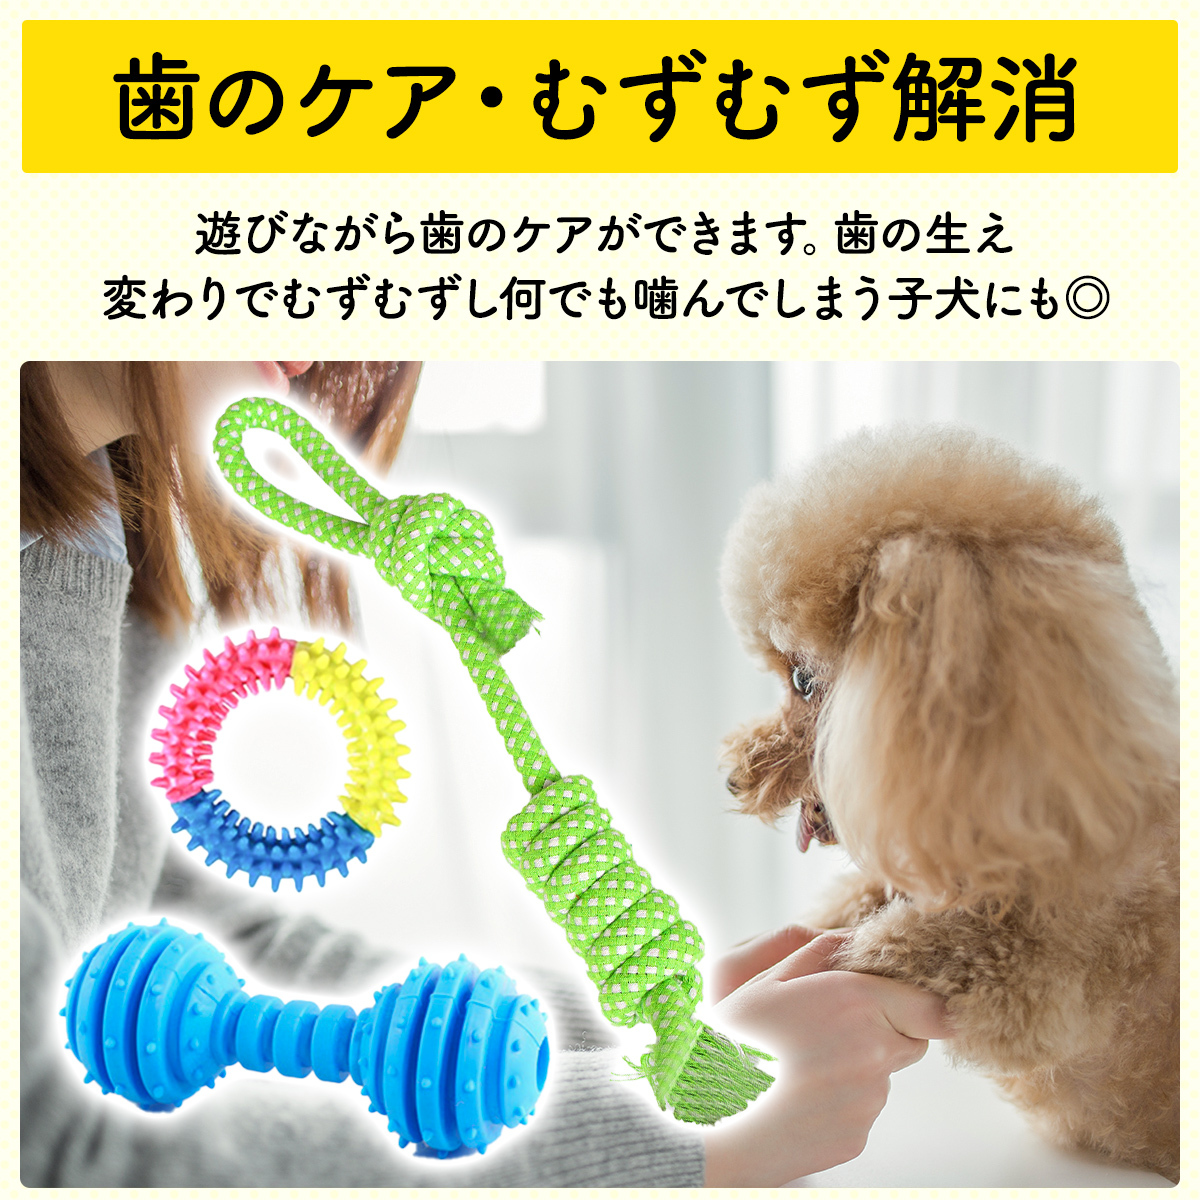  собака игрушка игрушка домашнее животное -тактный отсутствует аннулирование чистка зубов .. уход за зубами 